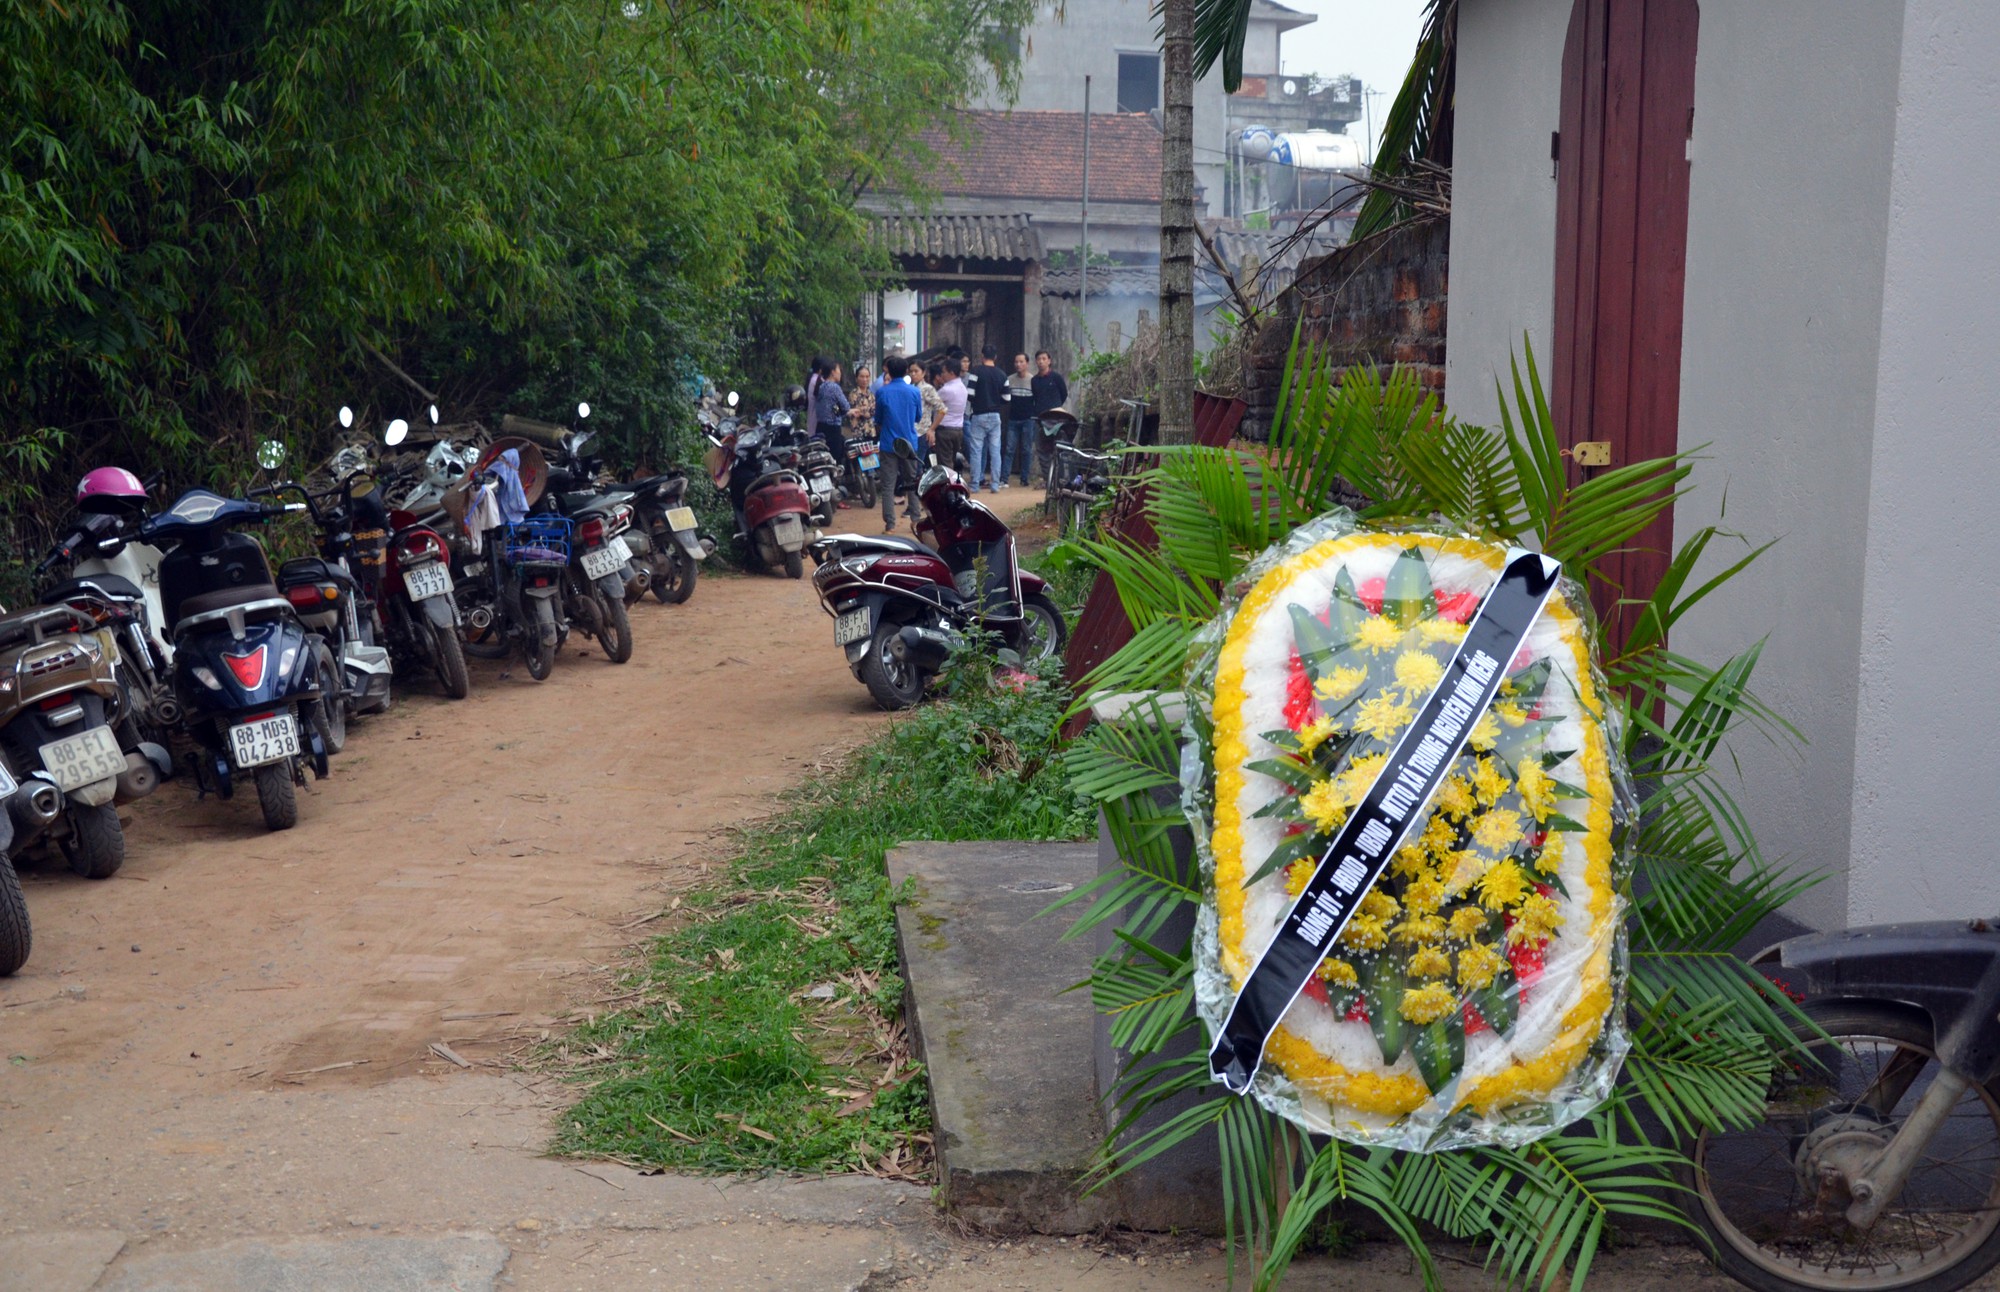 Cáo phó dán trắng đường làng có 7 người chết lúc đi đưa tang ở Vĩnh Phúc - Ảnh 13.